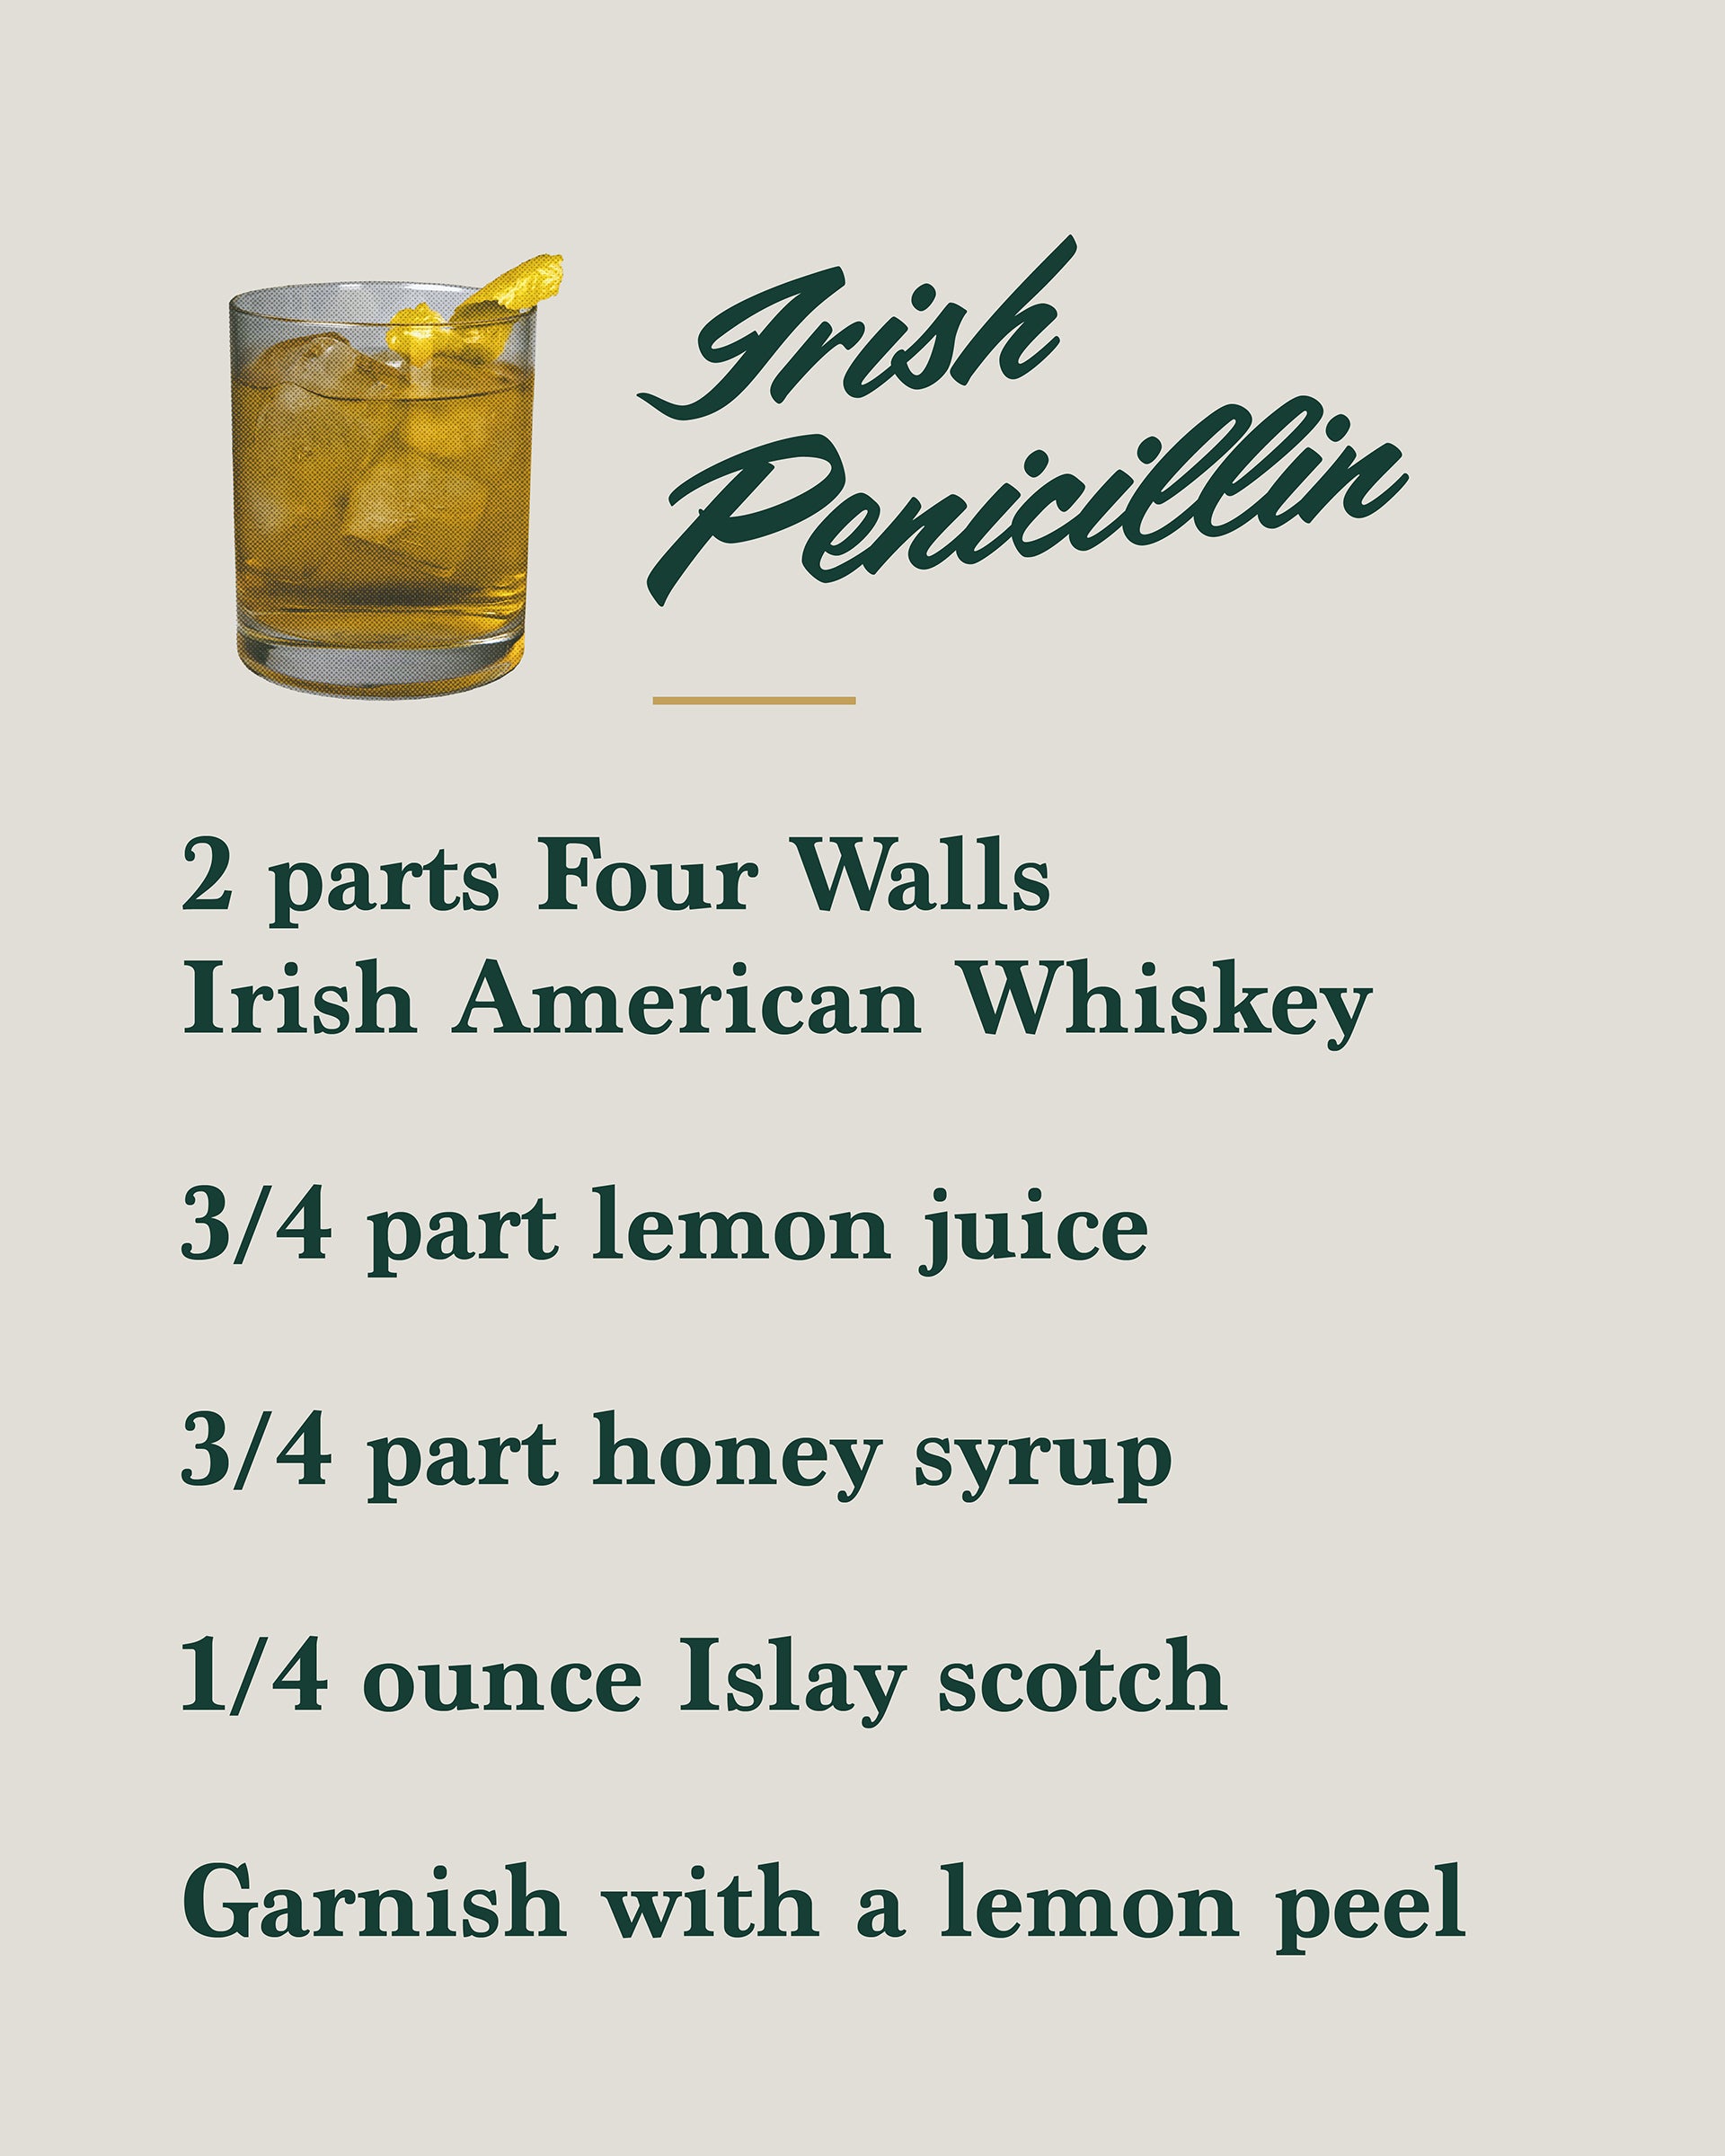 FW-cocktails_irish_penicillin_recipe.jpg